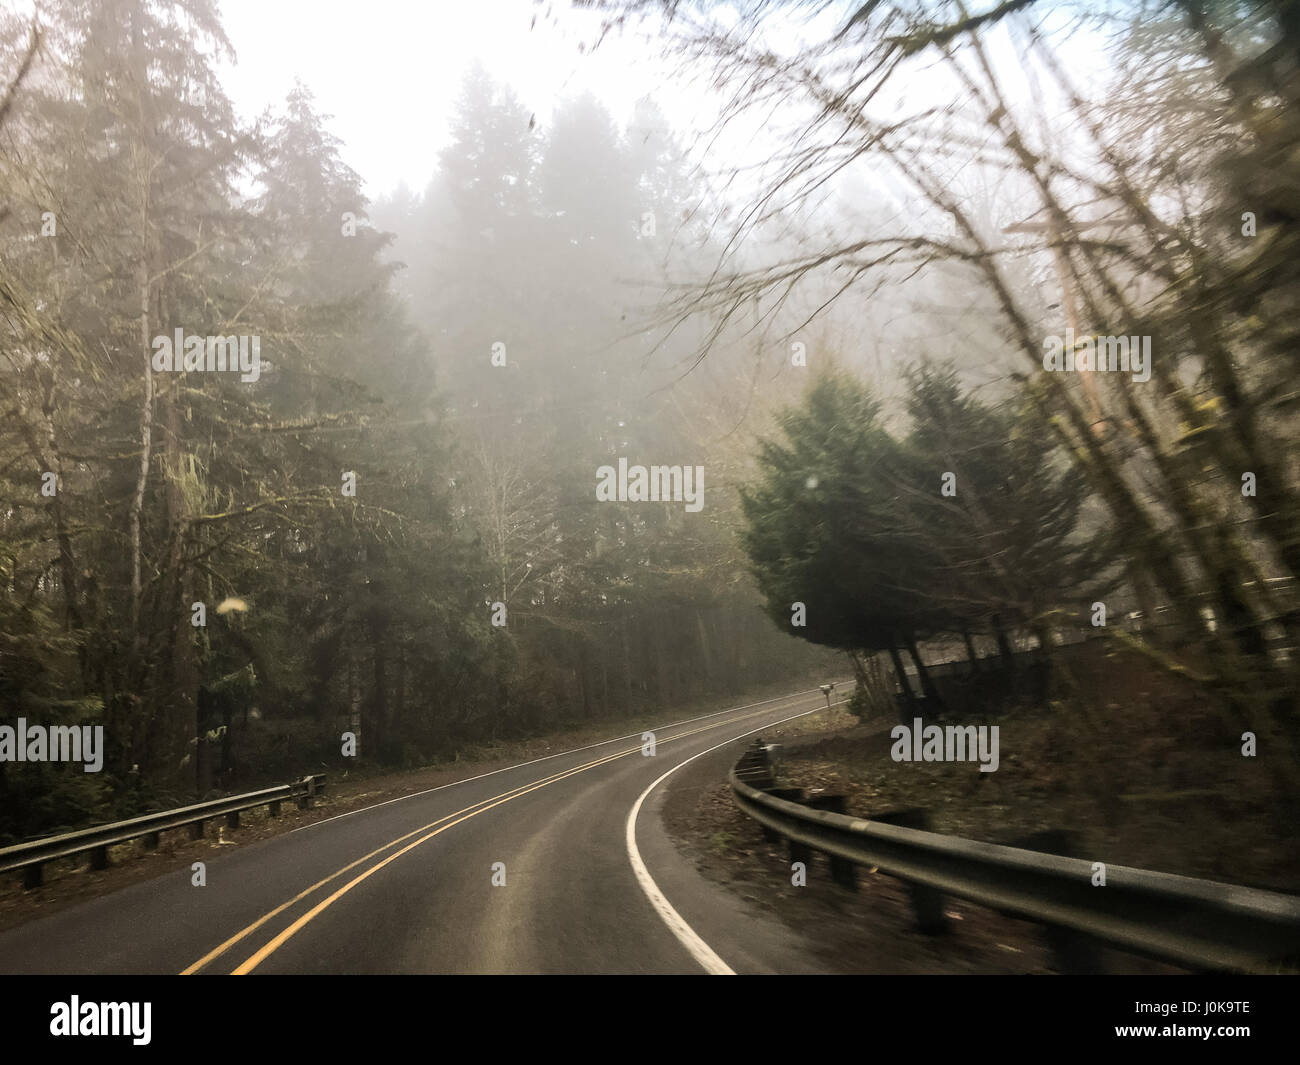 Abbiegung rechts mit Regen herab und Nebel in der Luft auf dieser Autobahn Landstraße in Oregon. Stockfoto